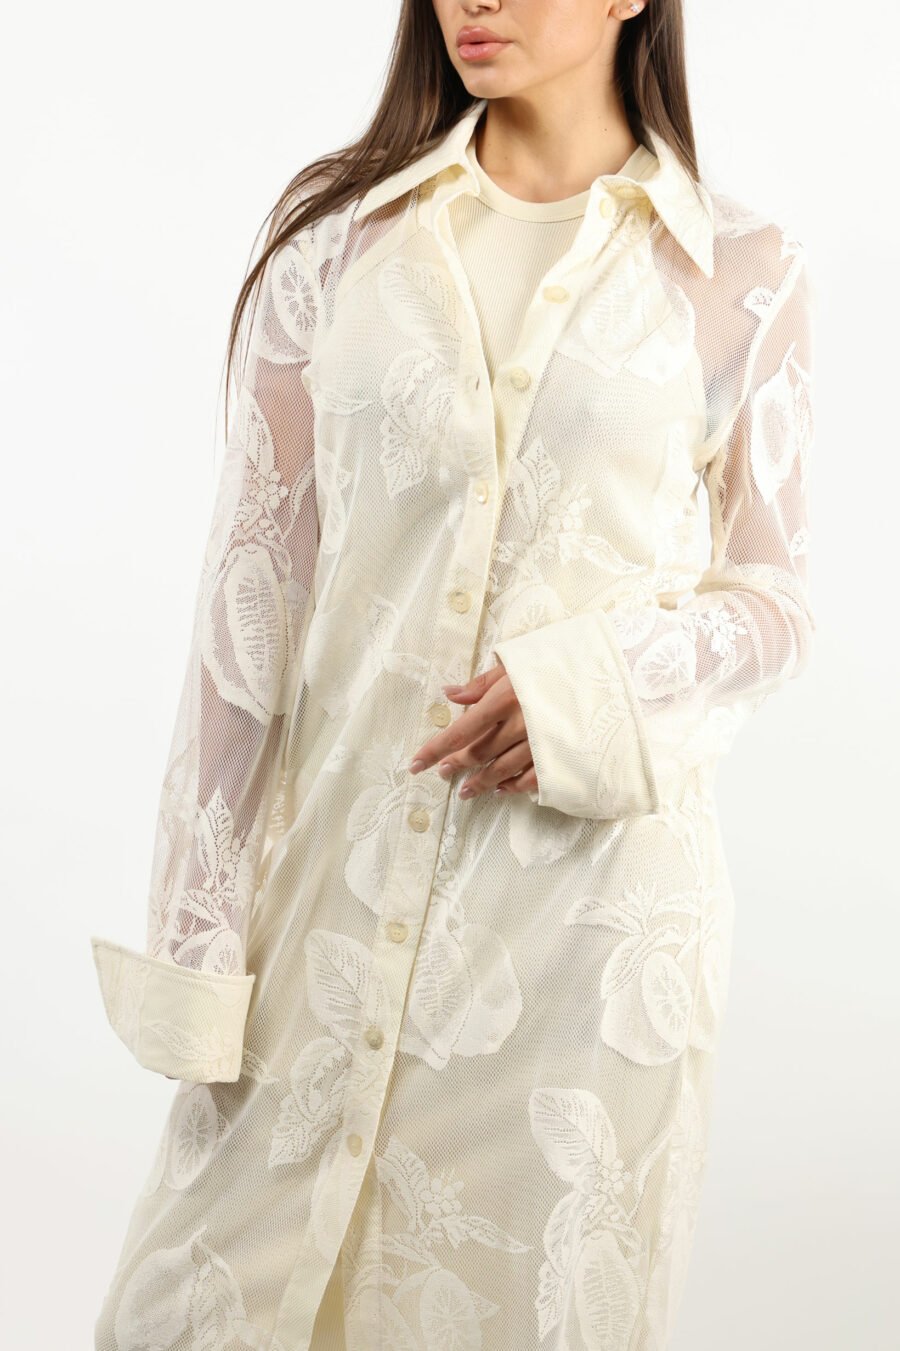 Vestido blanco semitransparente de encaje - 109405